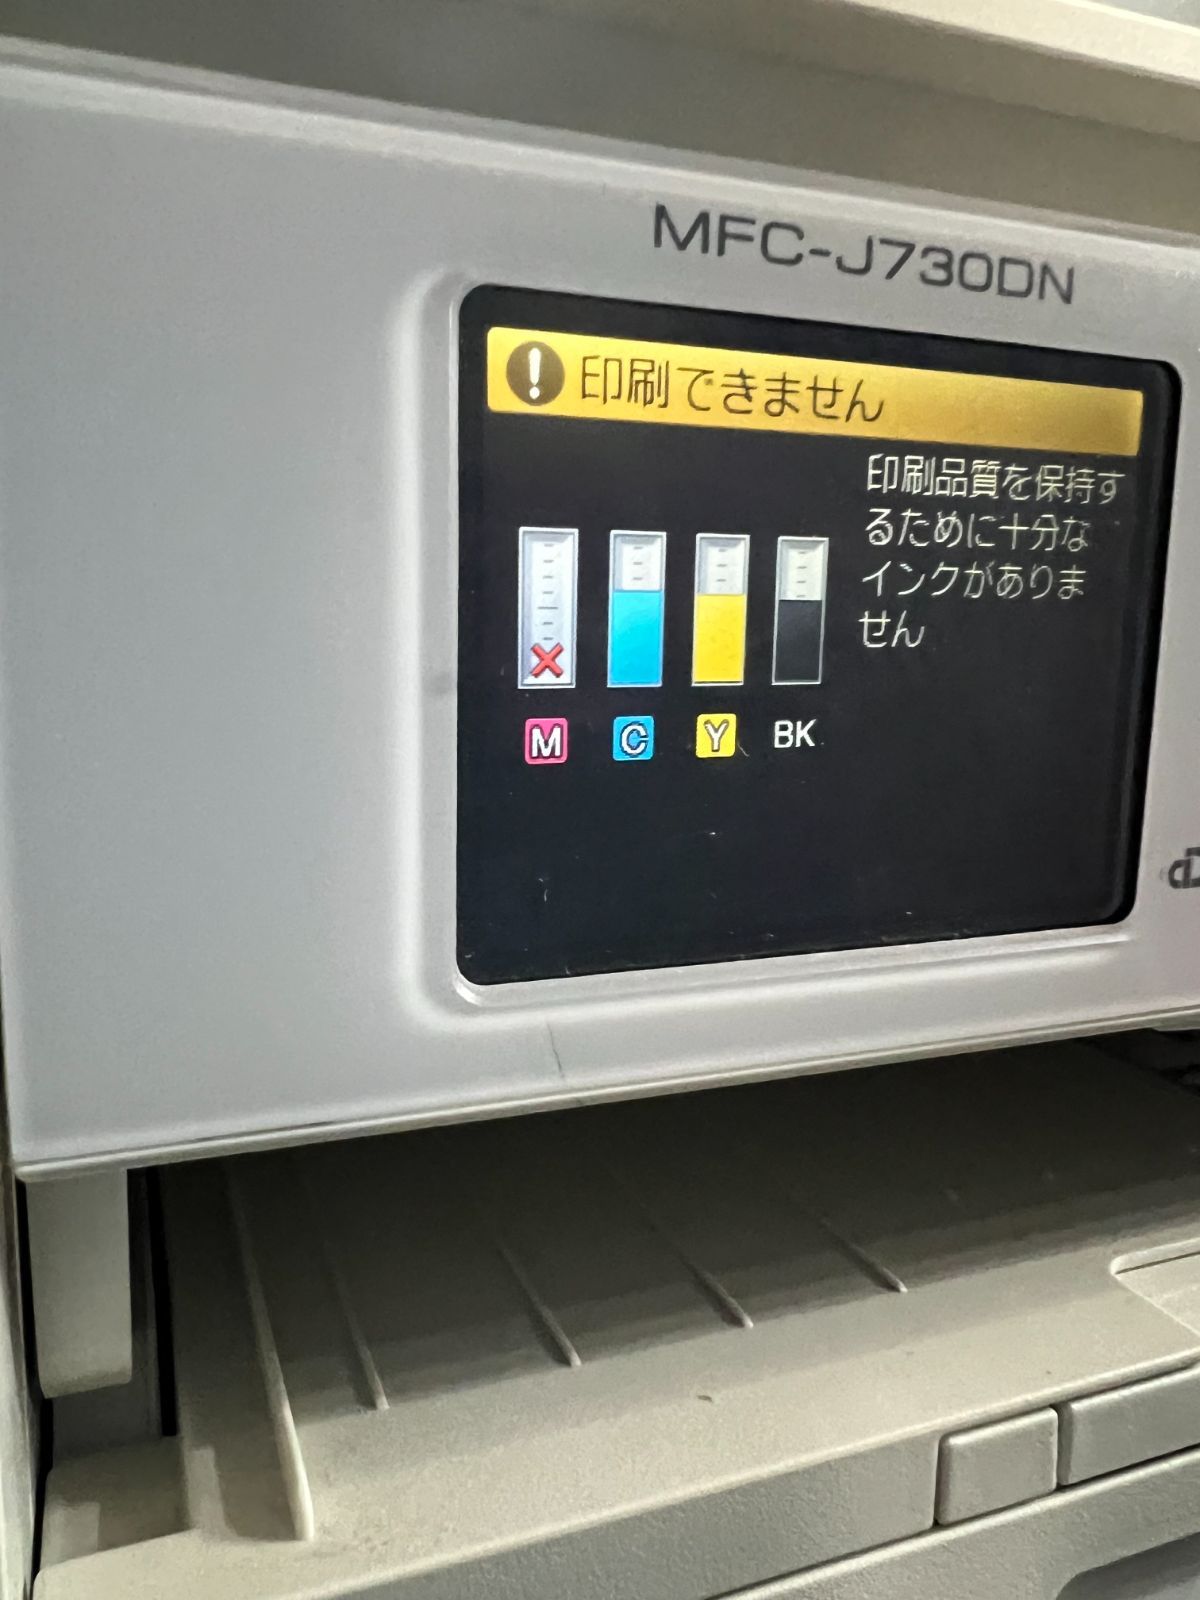 インクジェットプリンター複合機 MFC-J730DN FAX コピー 電話-6